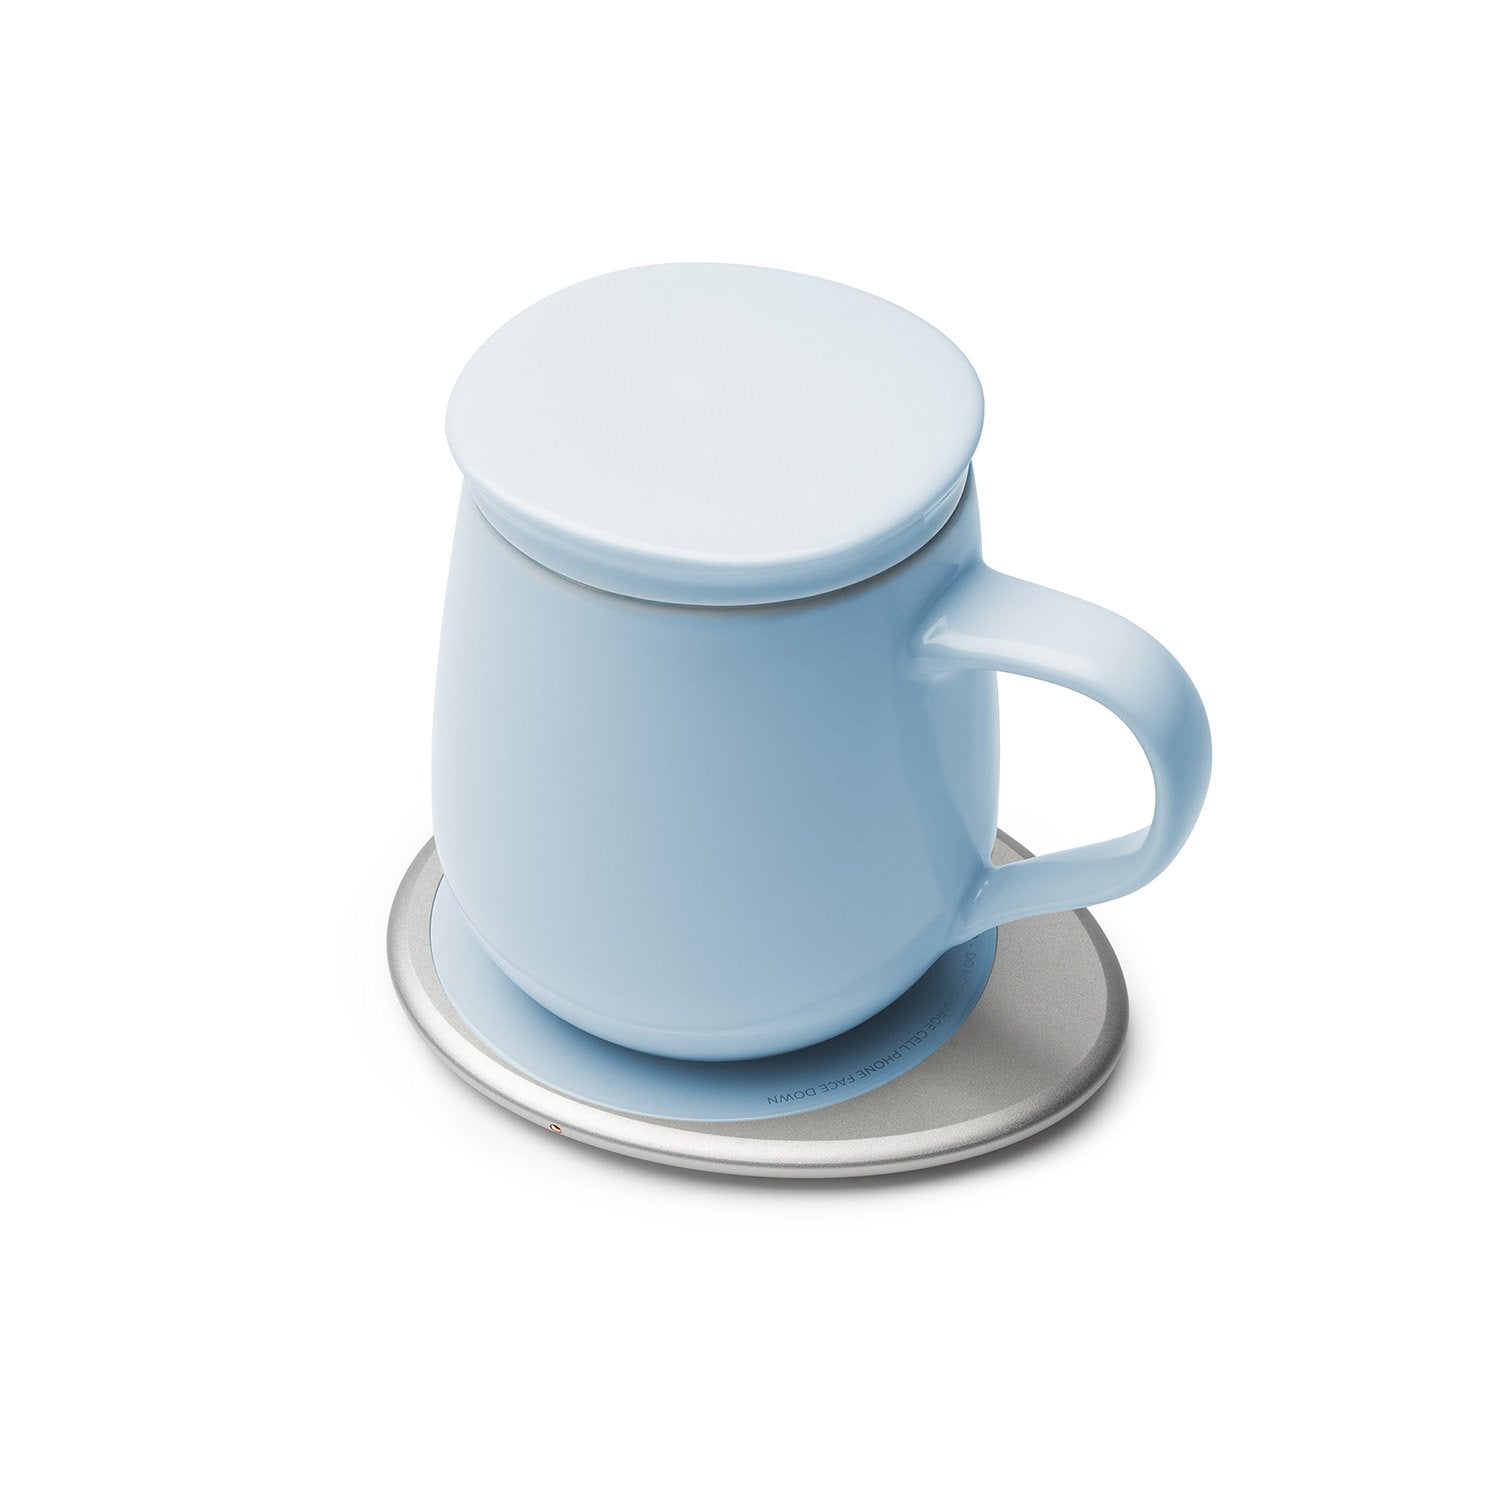 Light blue mug with lid on heating pad